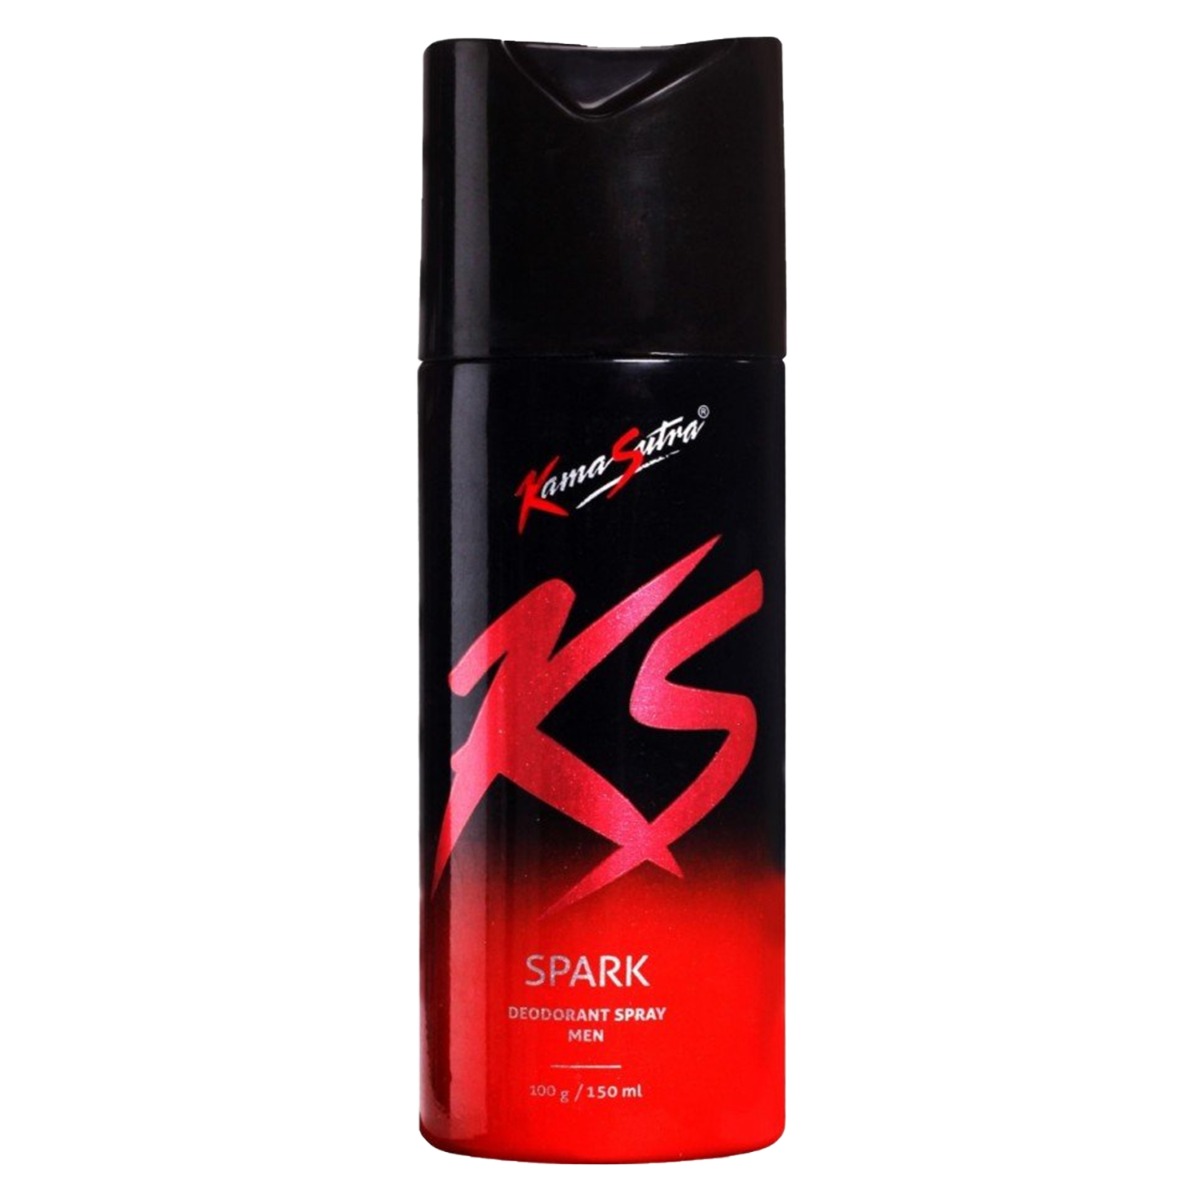 KamaSutra Spark Deodorant for Men, 150ml